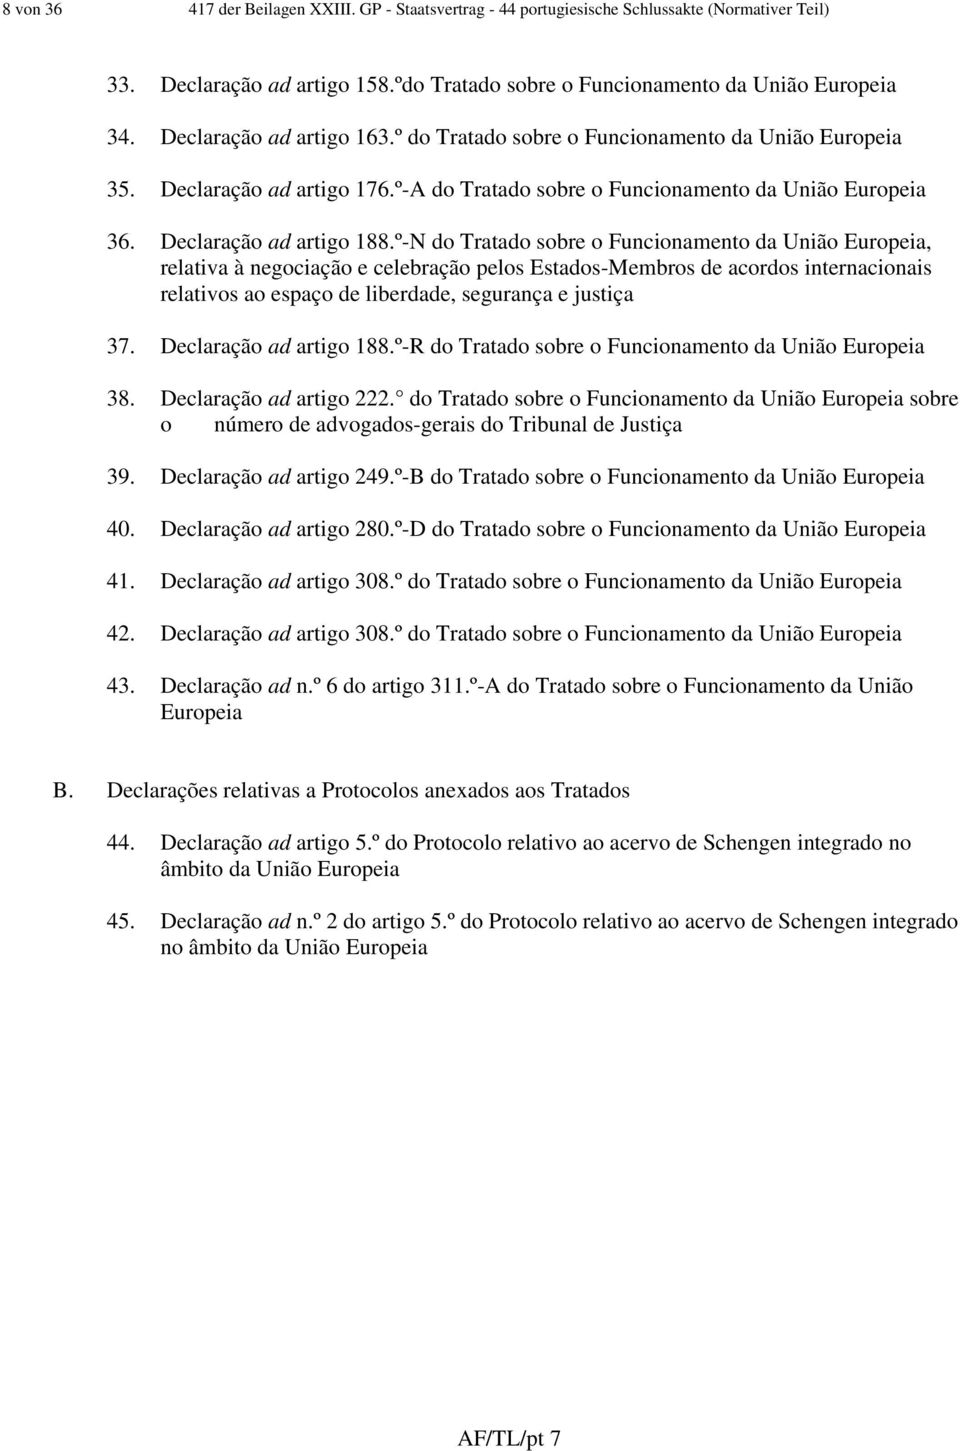 º-N do Tratado sobre o Funcionamento da União Europeia, relativa à negociação e celebração pelos Estados-Membros de acordos internacionais relativos ao espaço de liberdade, segurança e justiça 37.